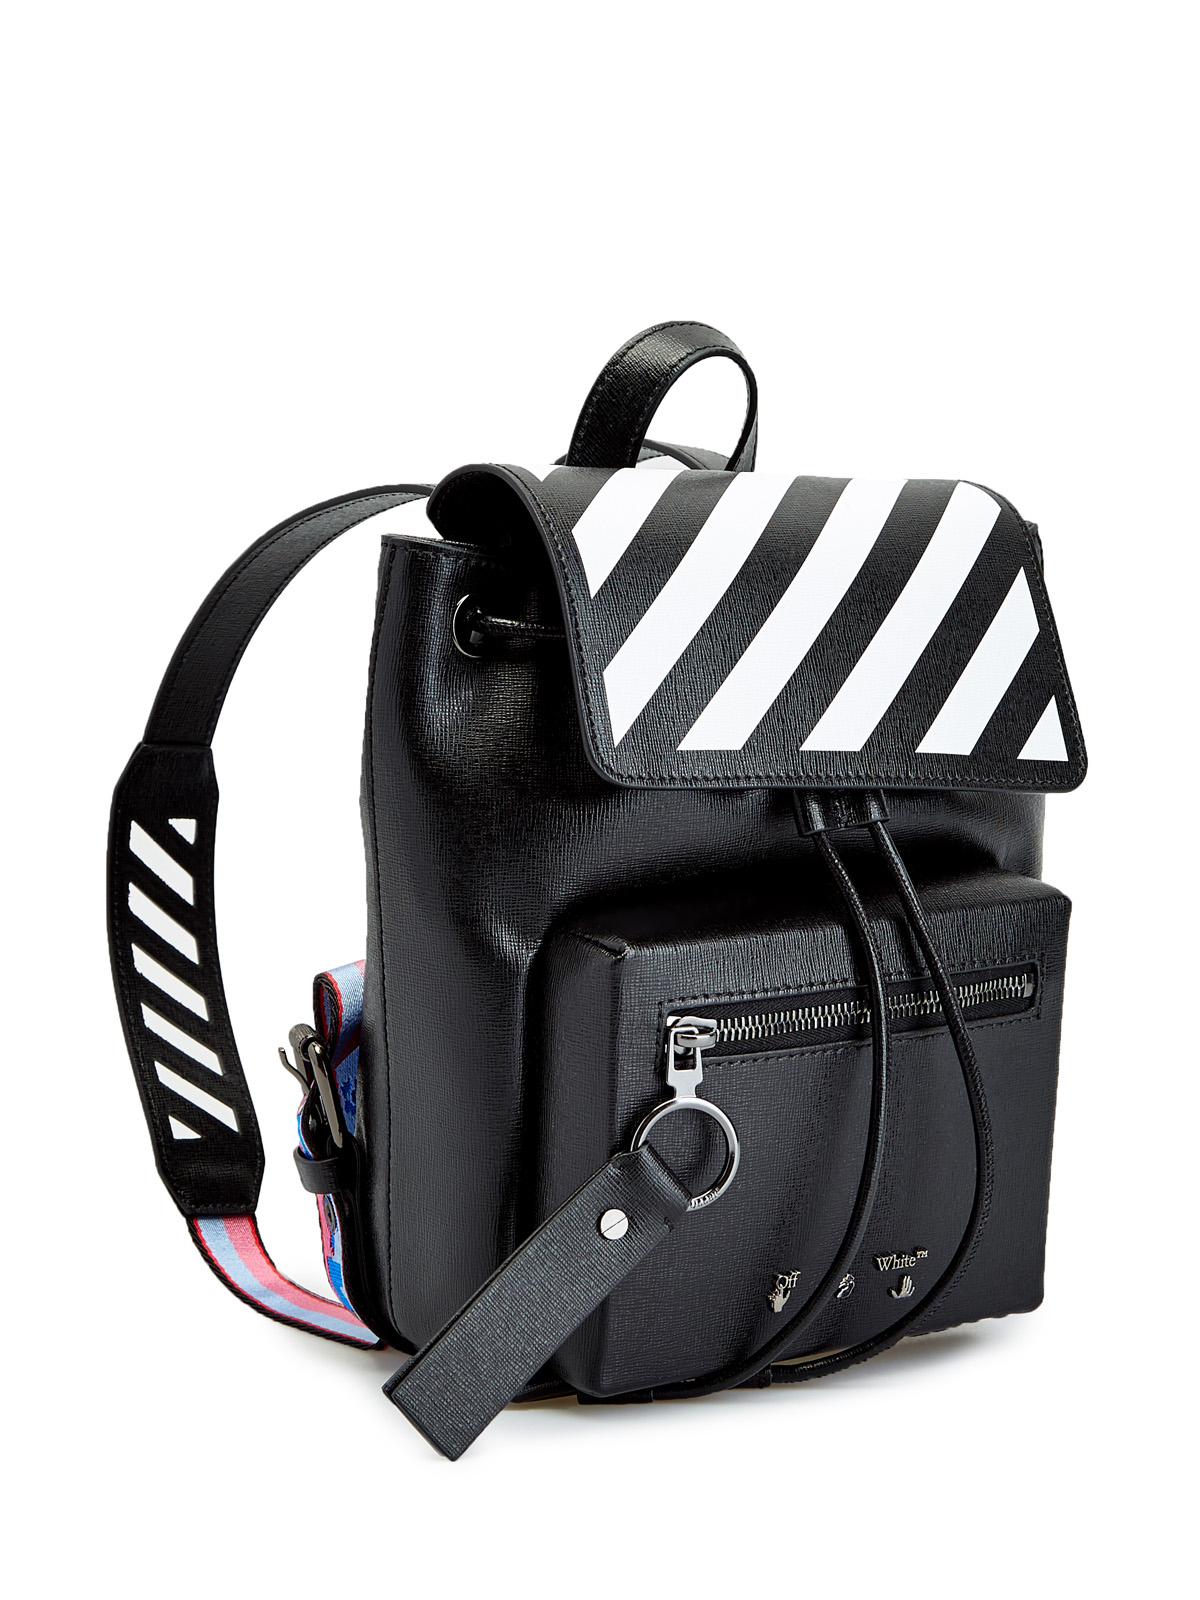 Кожаный рюкзак Diag с принтом в диагональную полоску OFF-WHITE, цвет черно-белый, размер 36;36.5;37.5;38;38.5;39;40 - фото 3